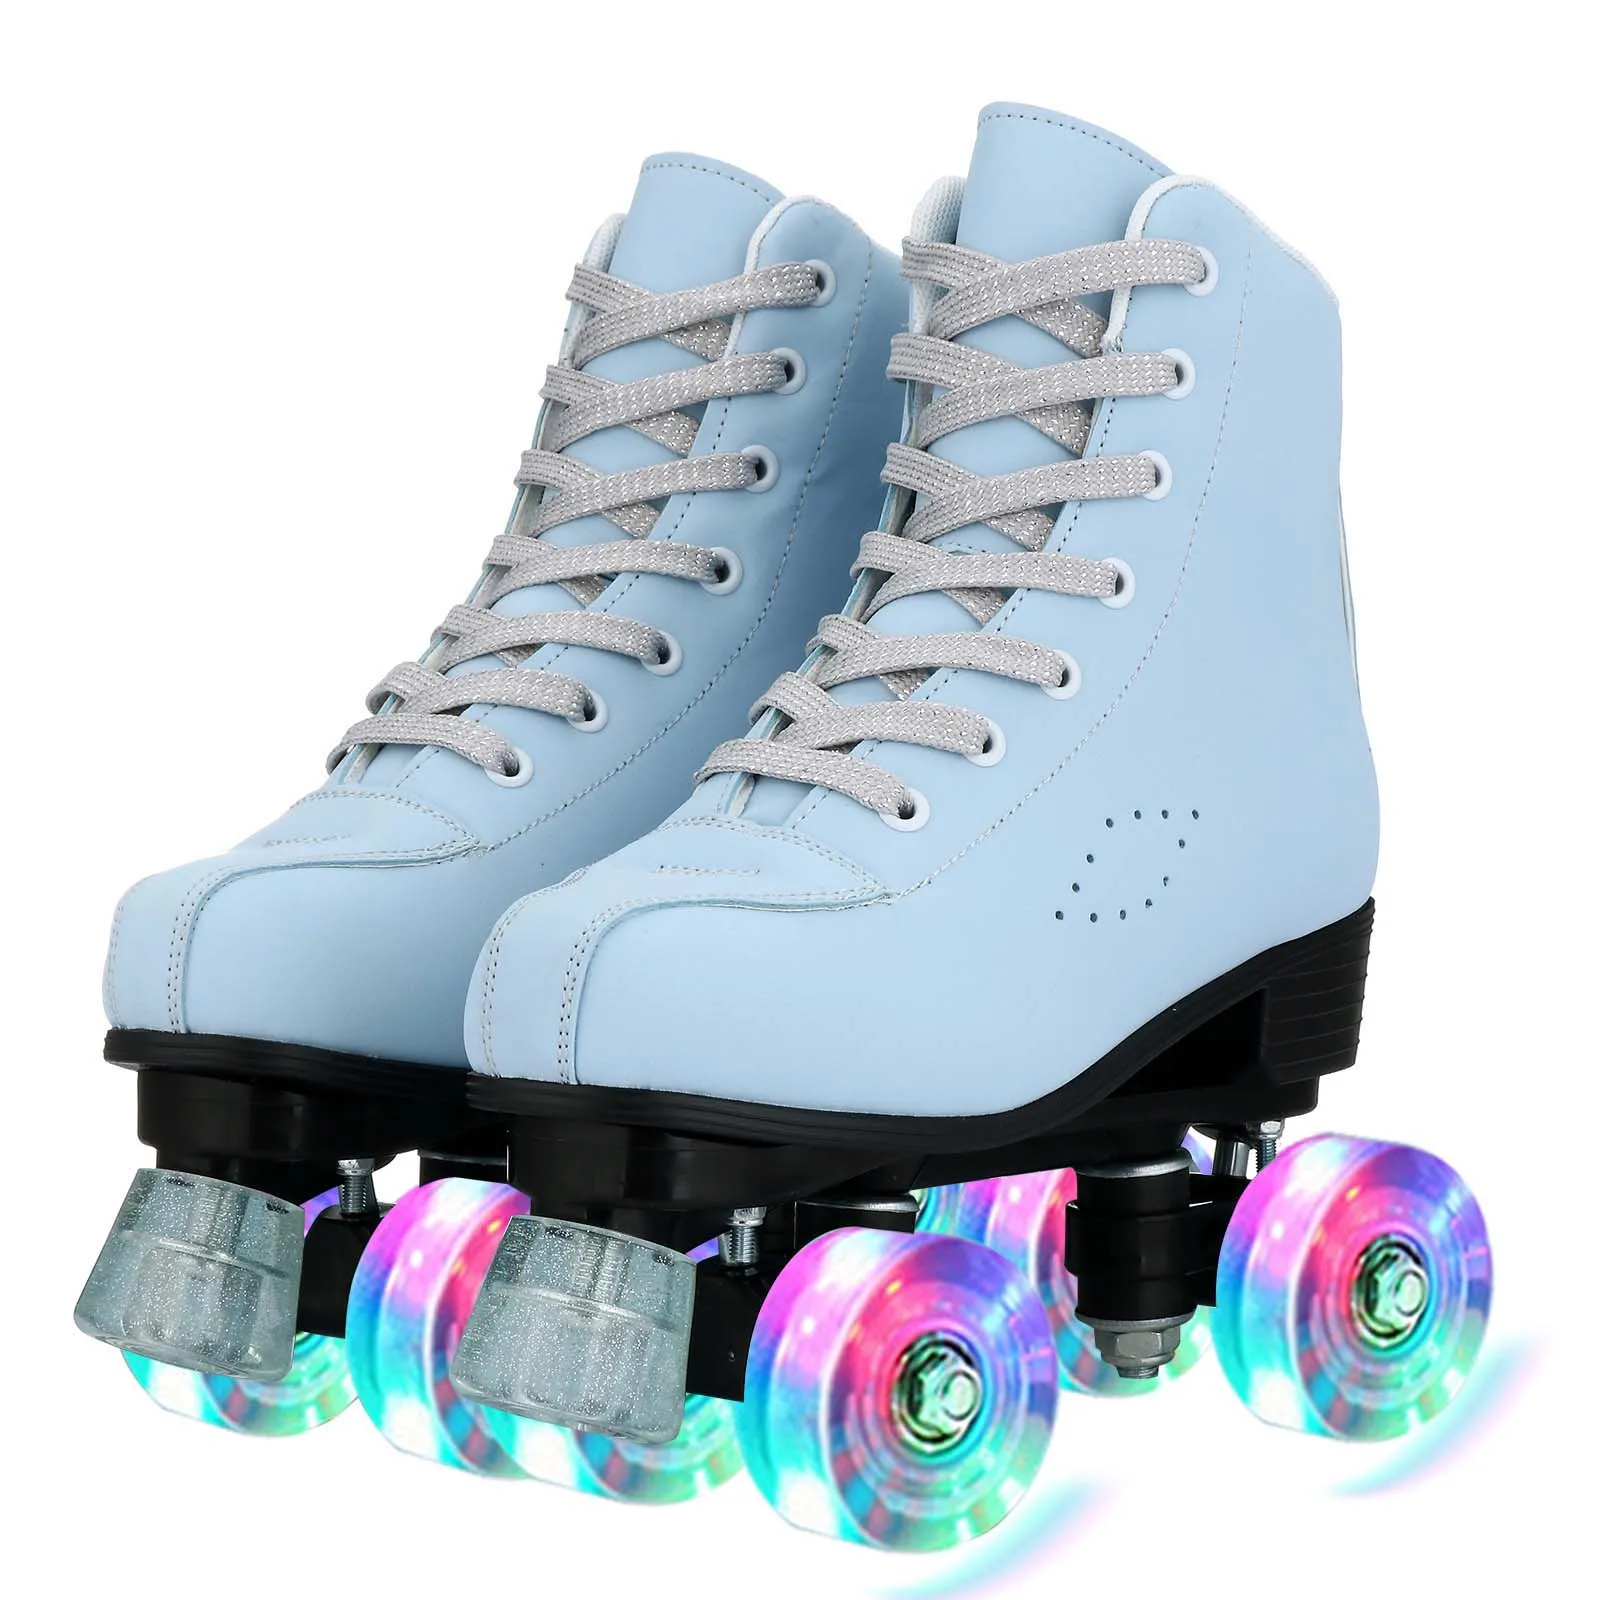 

Adult Quad Roller Skate Shoes For Women Flashing 4 Wheels Skates Beginner Kids Girls Outdoor Skating Sneakers Children Gift Blue